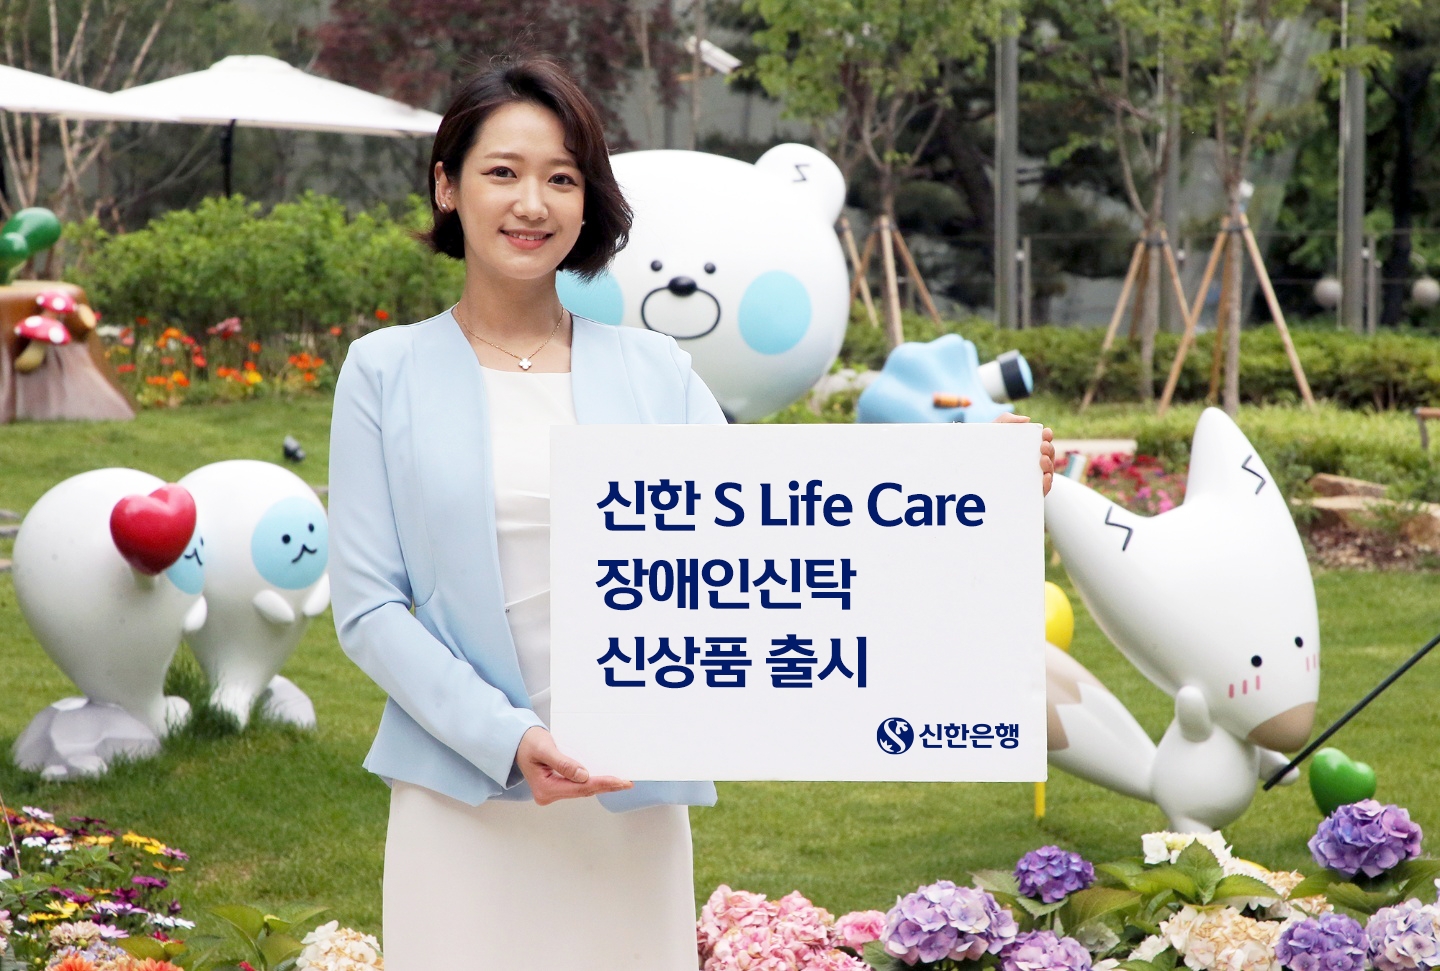 신한은행은 ‘신한 S Life Care 장애인 신탁’ 상품을 출시했다. / 사진제공=신한은행